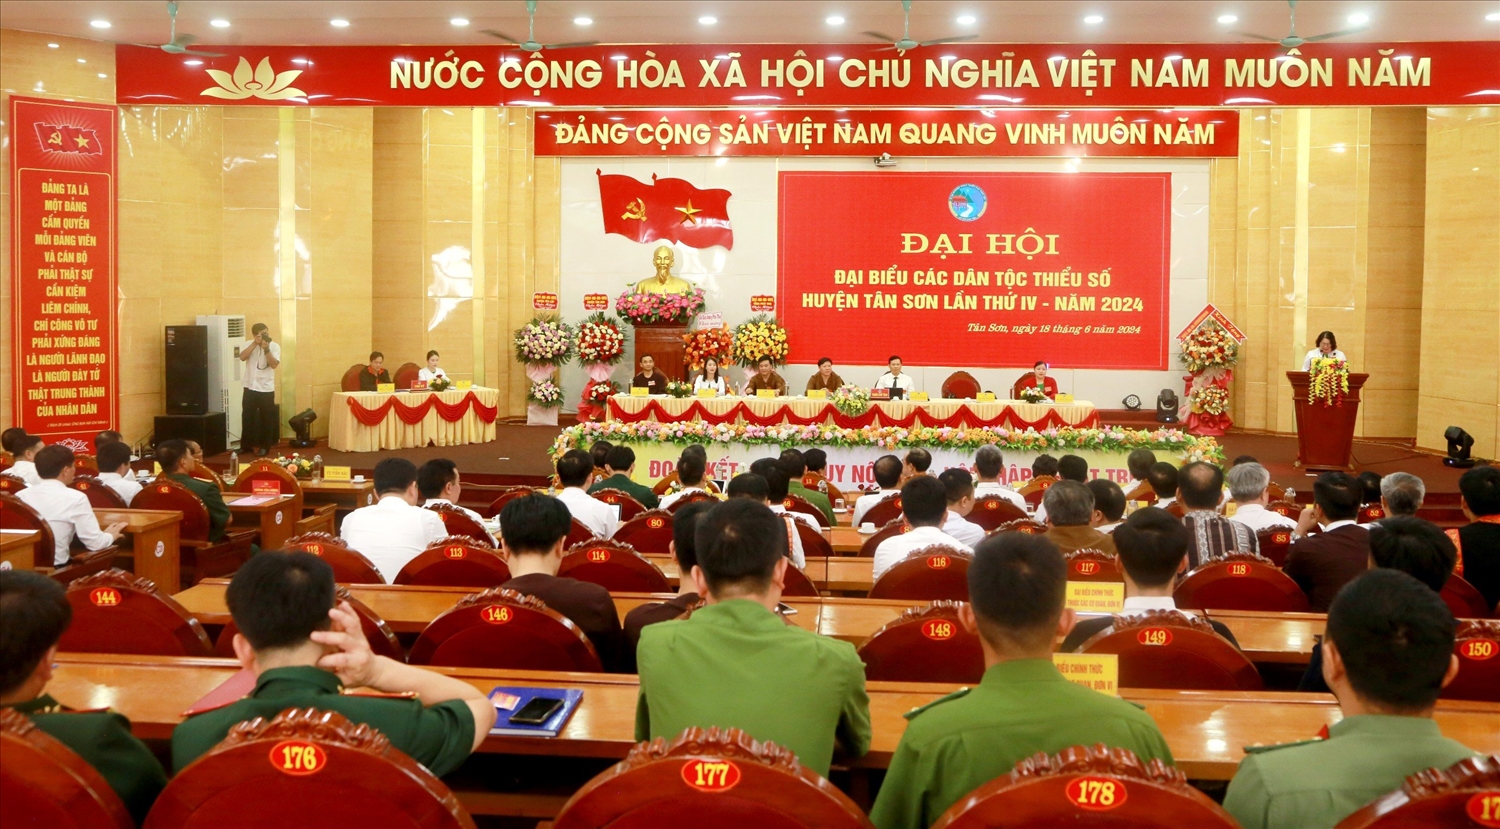 Đại hội Đại biểu các dân tộc thiểu số huyện Tân Sơn (Phú Thọ) lần thứ IV năm 2024